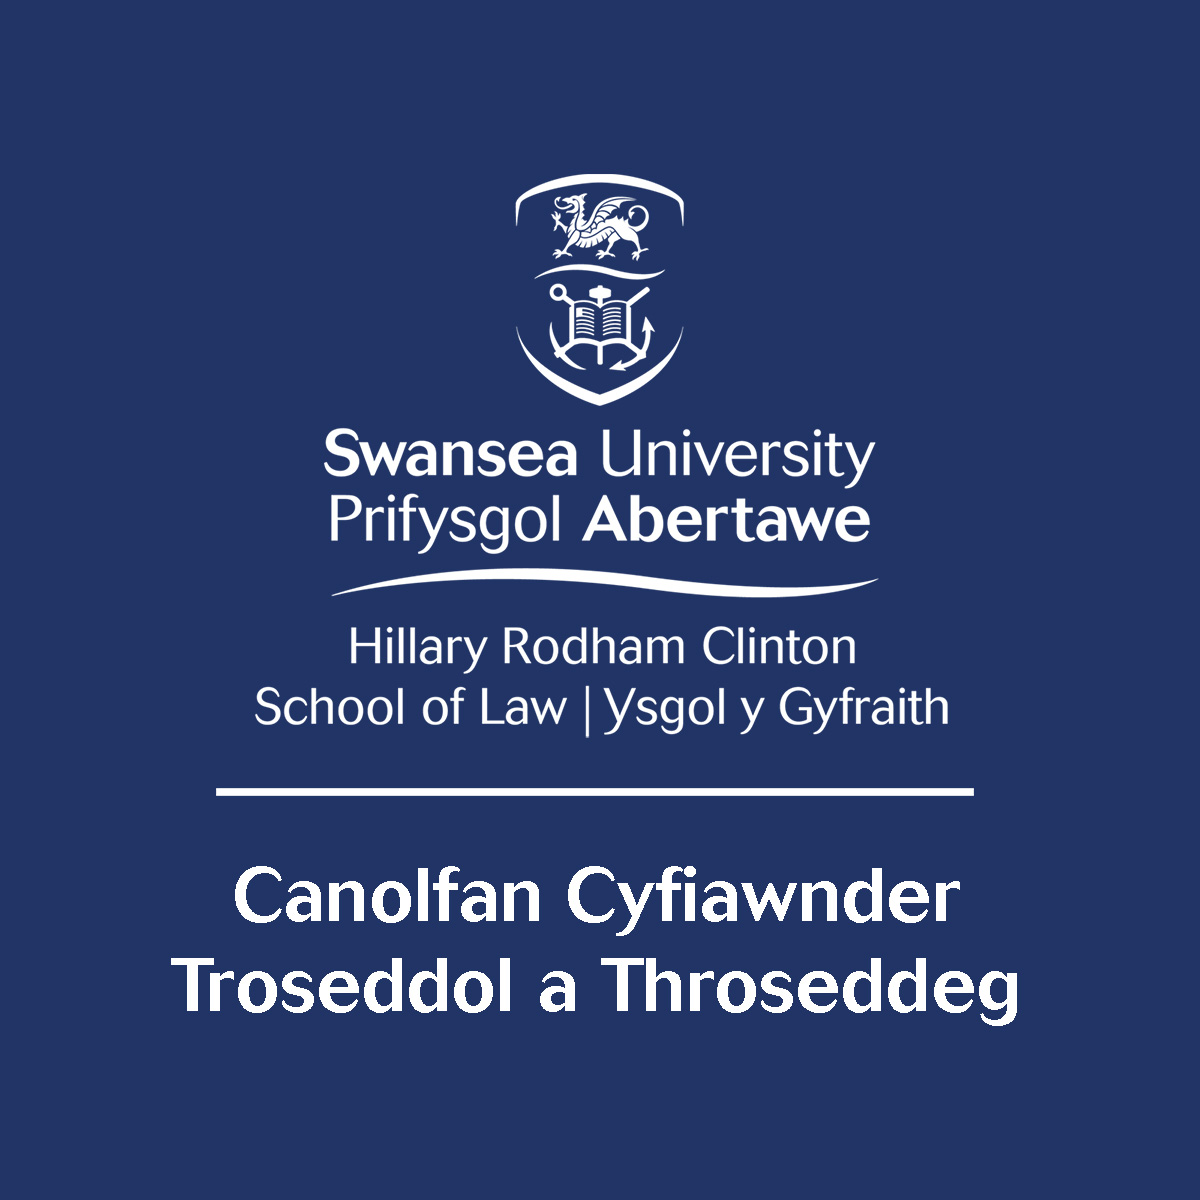 Canolfan Cyfiawnder Troseddol a Throseddeg logo